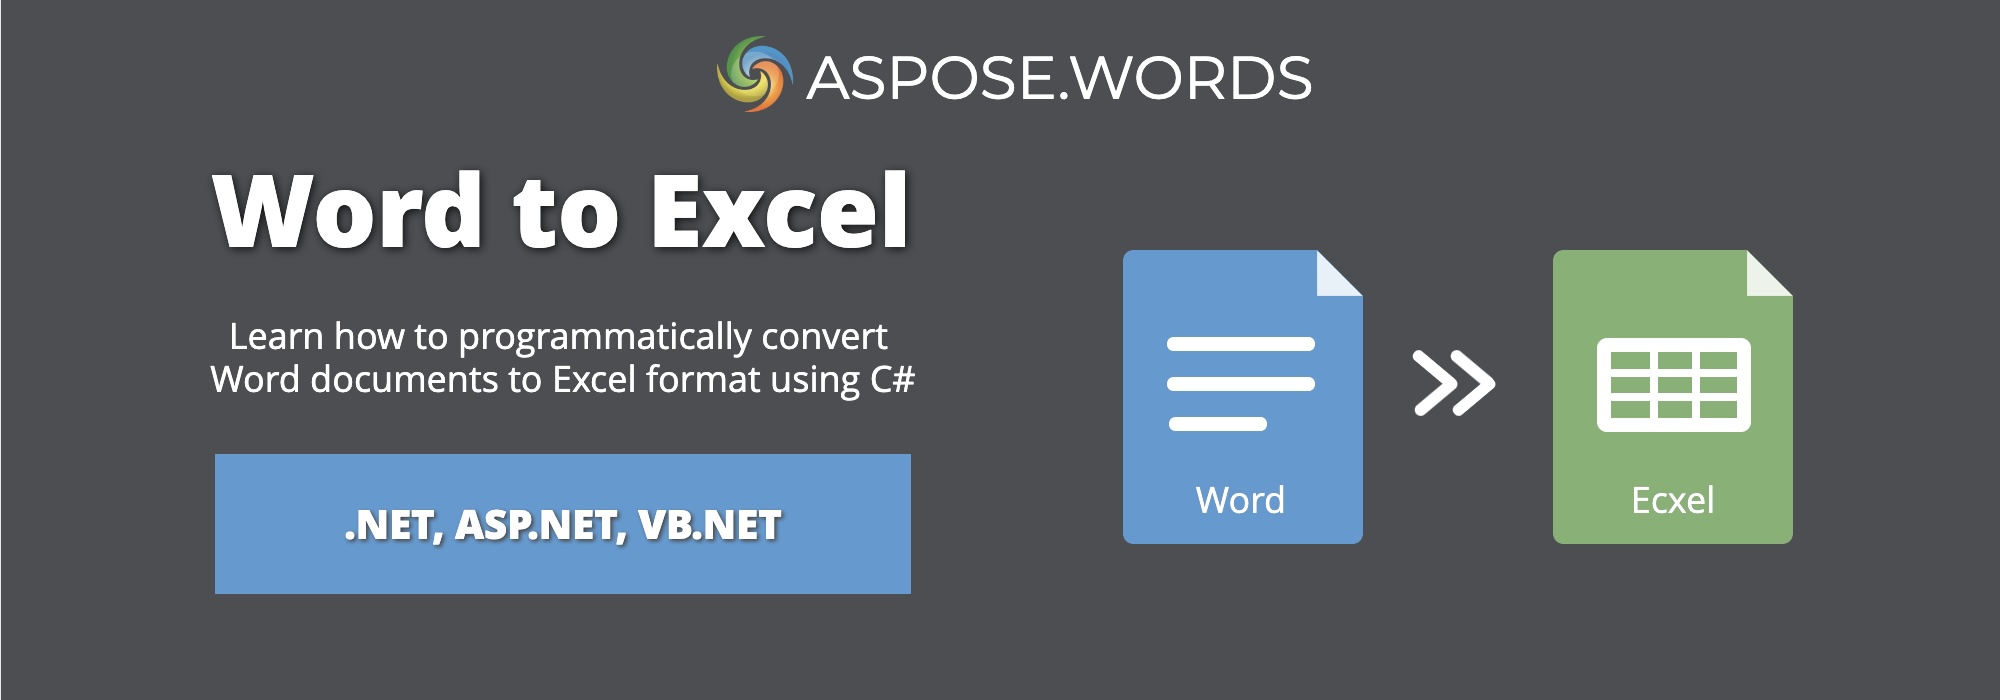 Word in Excel umwandeln in C# | DOCX in XLSX umwandeln in C#